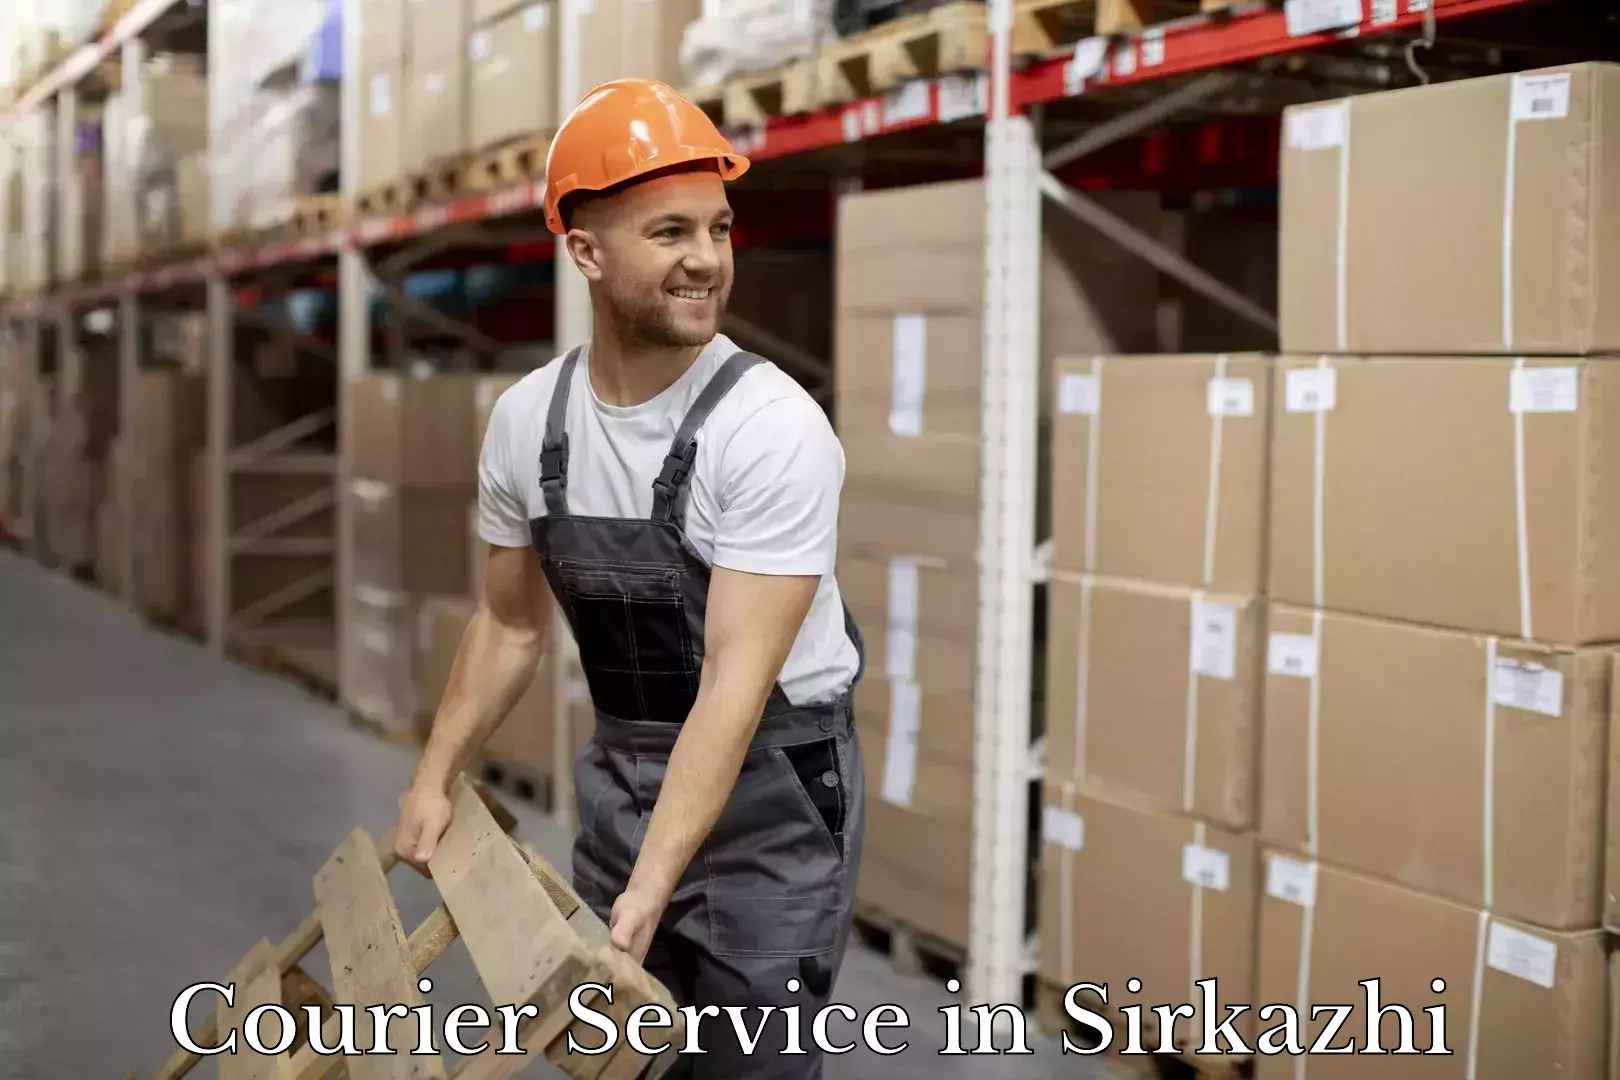 Courier service comparison in Sirkazhi